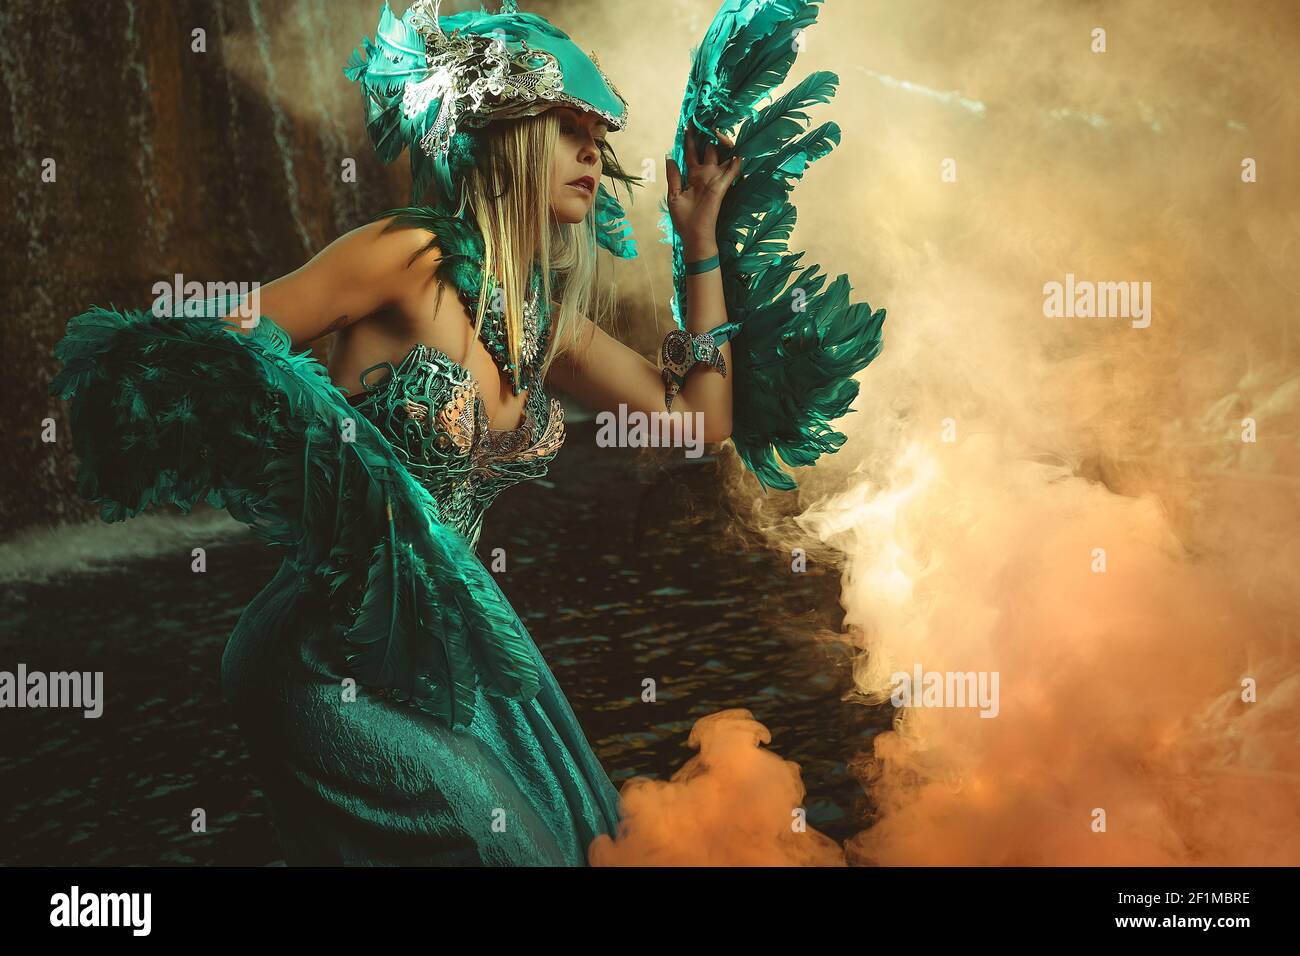 Fantasy-Szene, schöne blonde Frau in ausgefallenen Kleid und blauen Engelsflügel auf den Armen Stockfoto